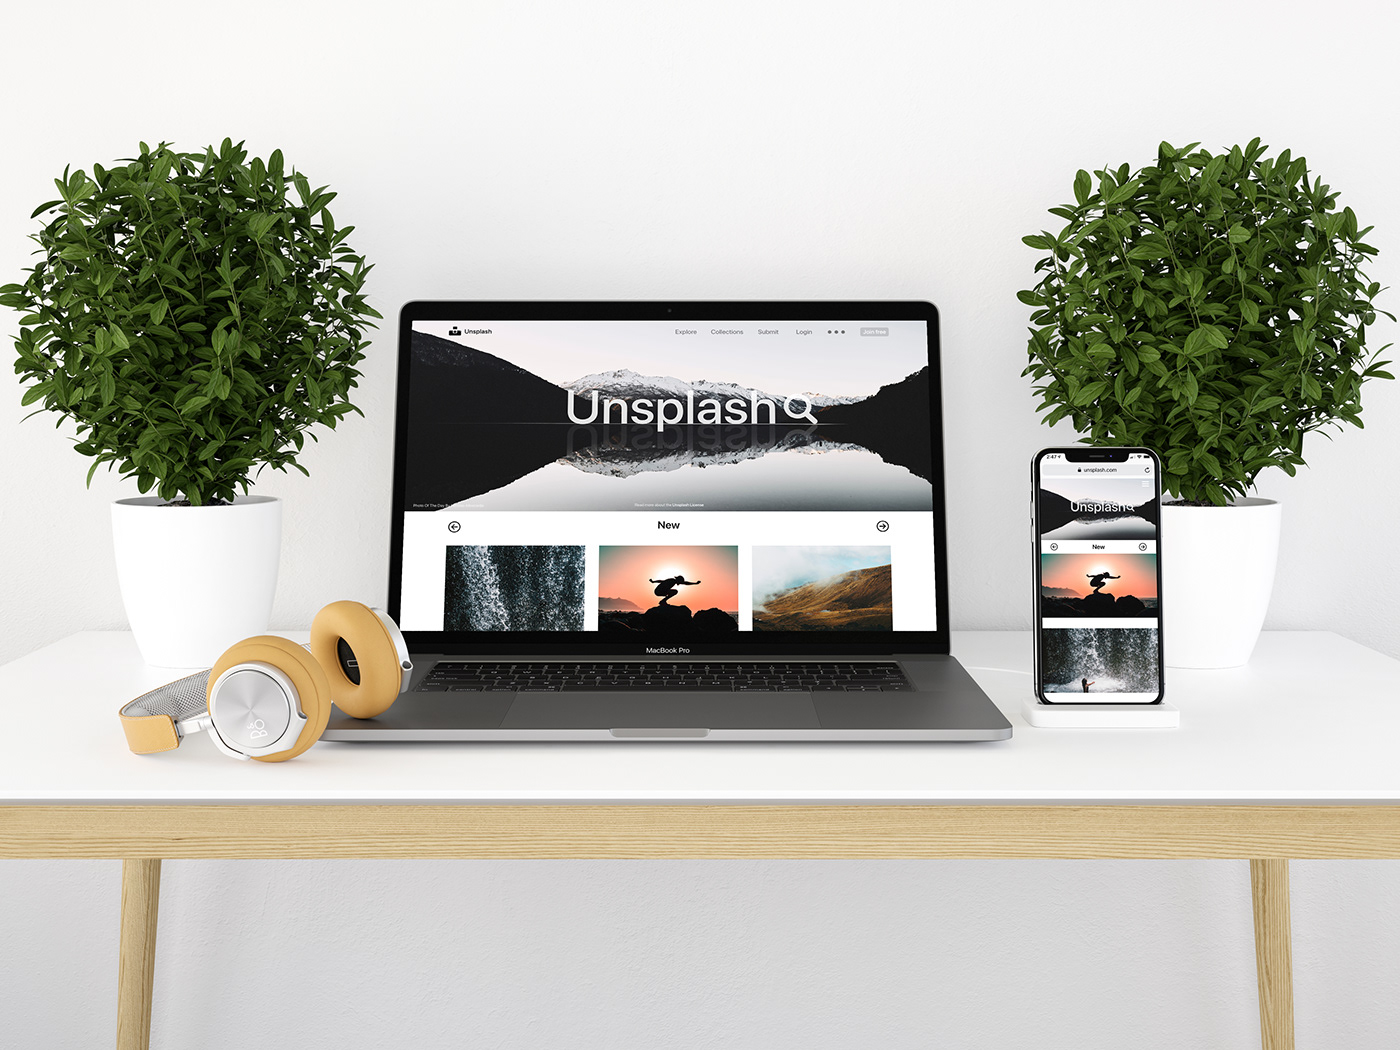 UI ux unsplash UI/UX interaction concept logo Web mobile app